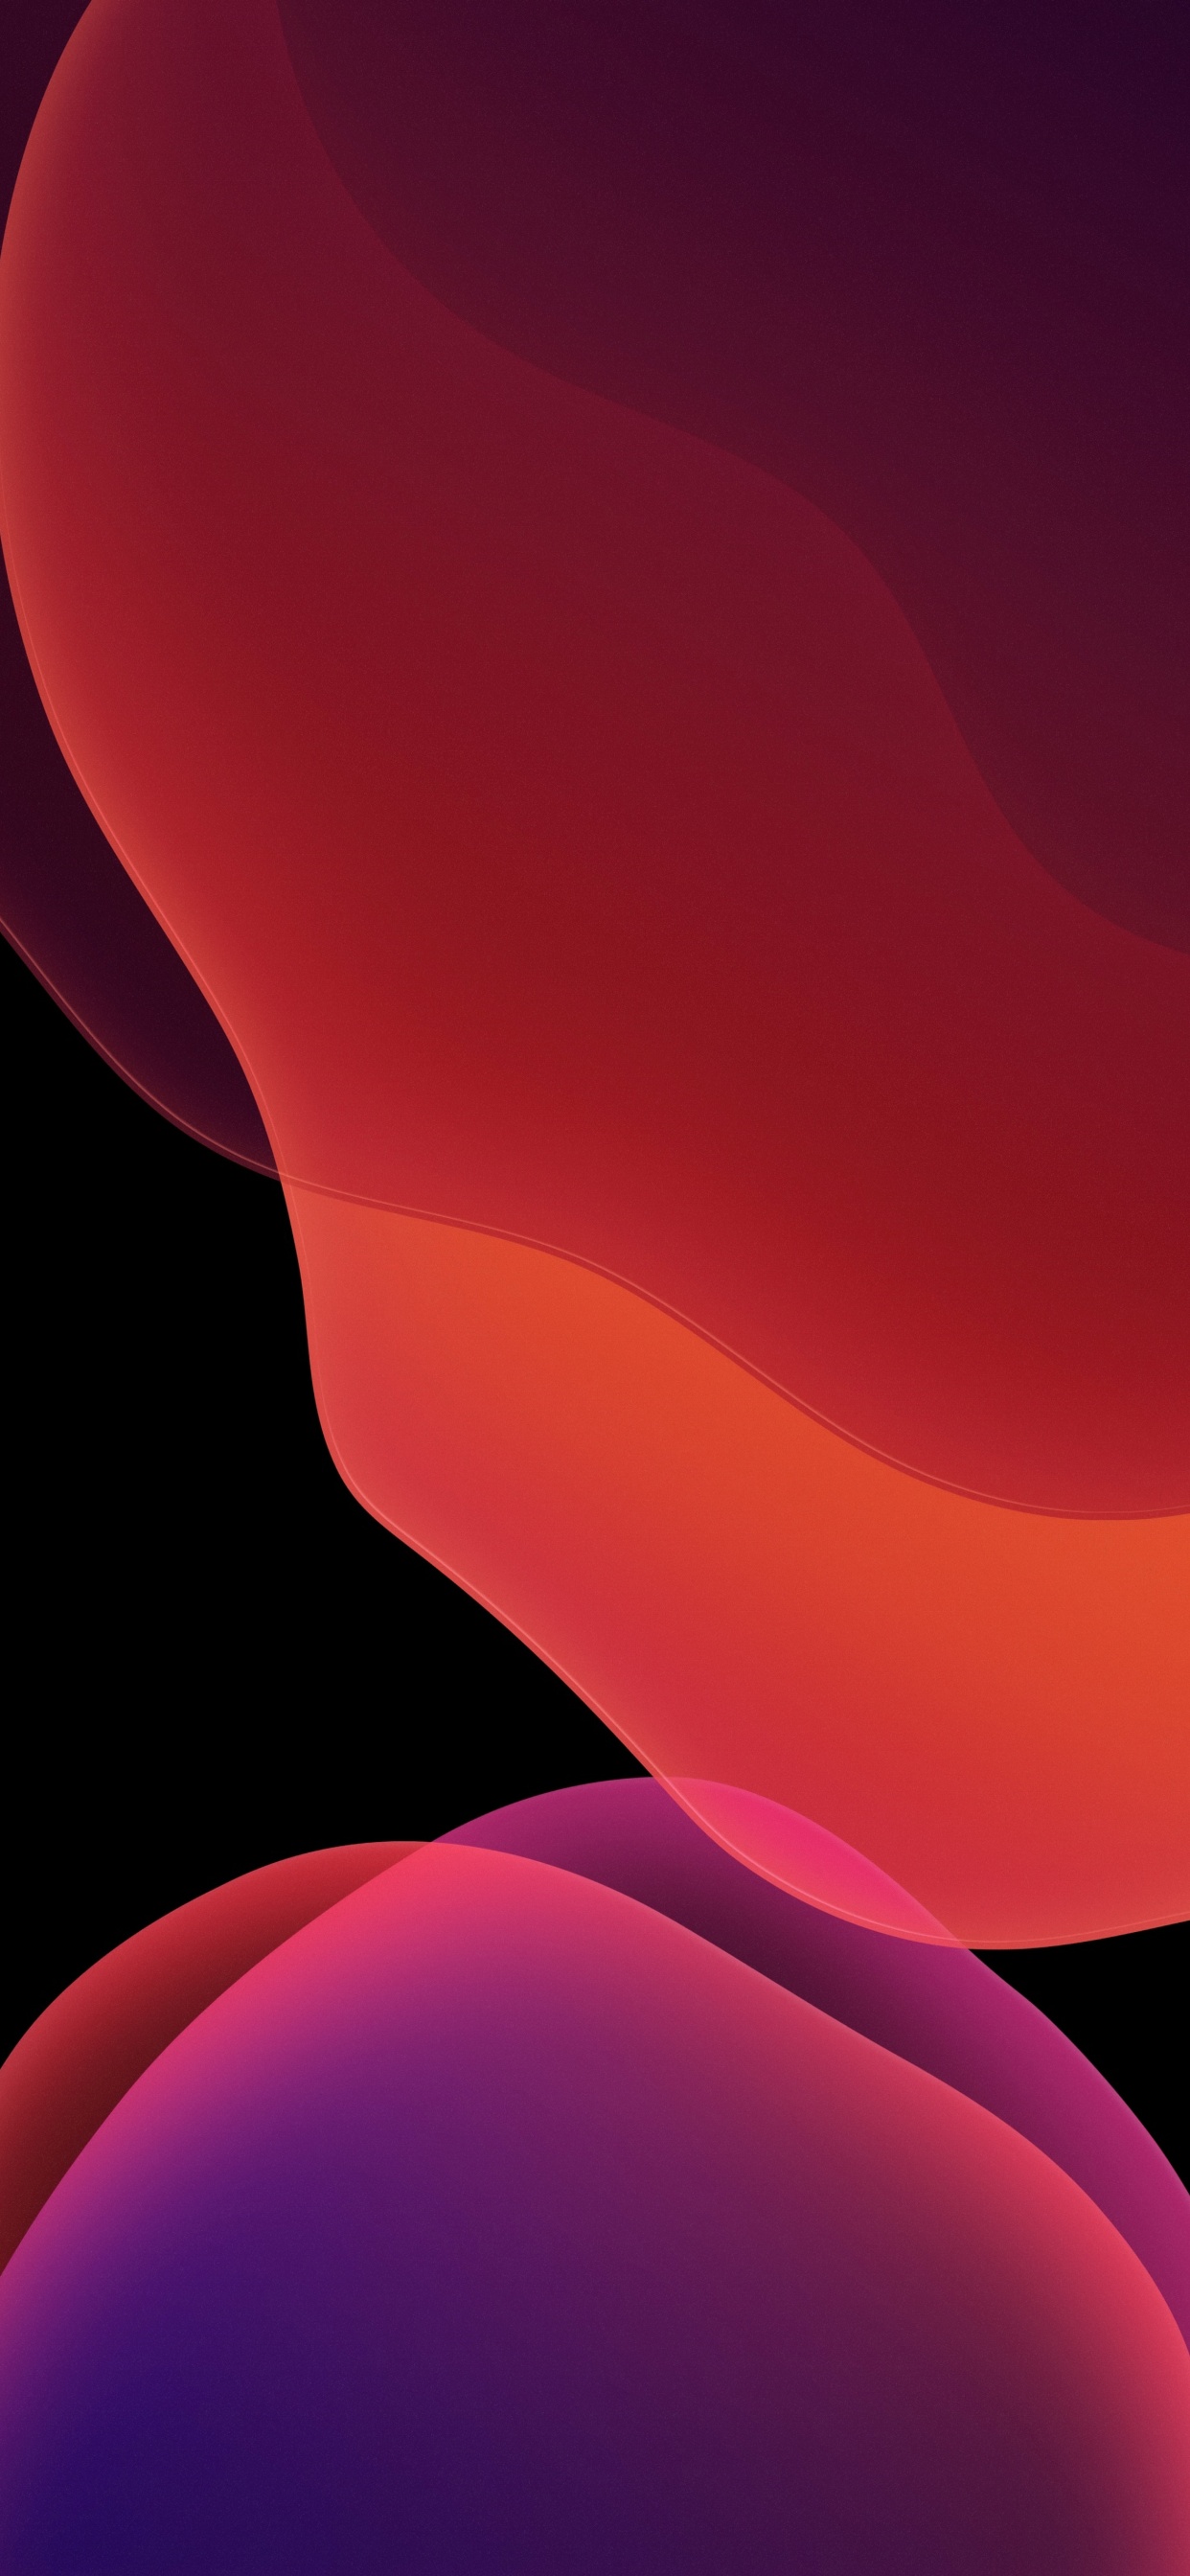 Hình nền iOS 13 đầy đủ màu sắc sẽ khiến bạn bị cuốn hút ngay lập tức. Hãy xem hình ảnh để cập nhật xu hướng mới nhất của Apple.